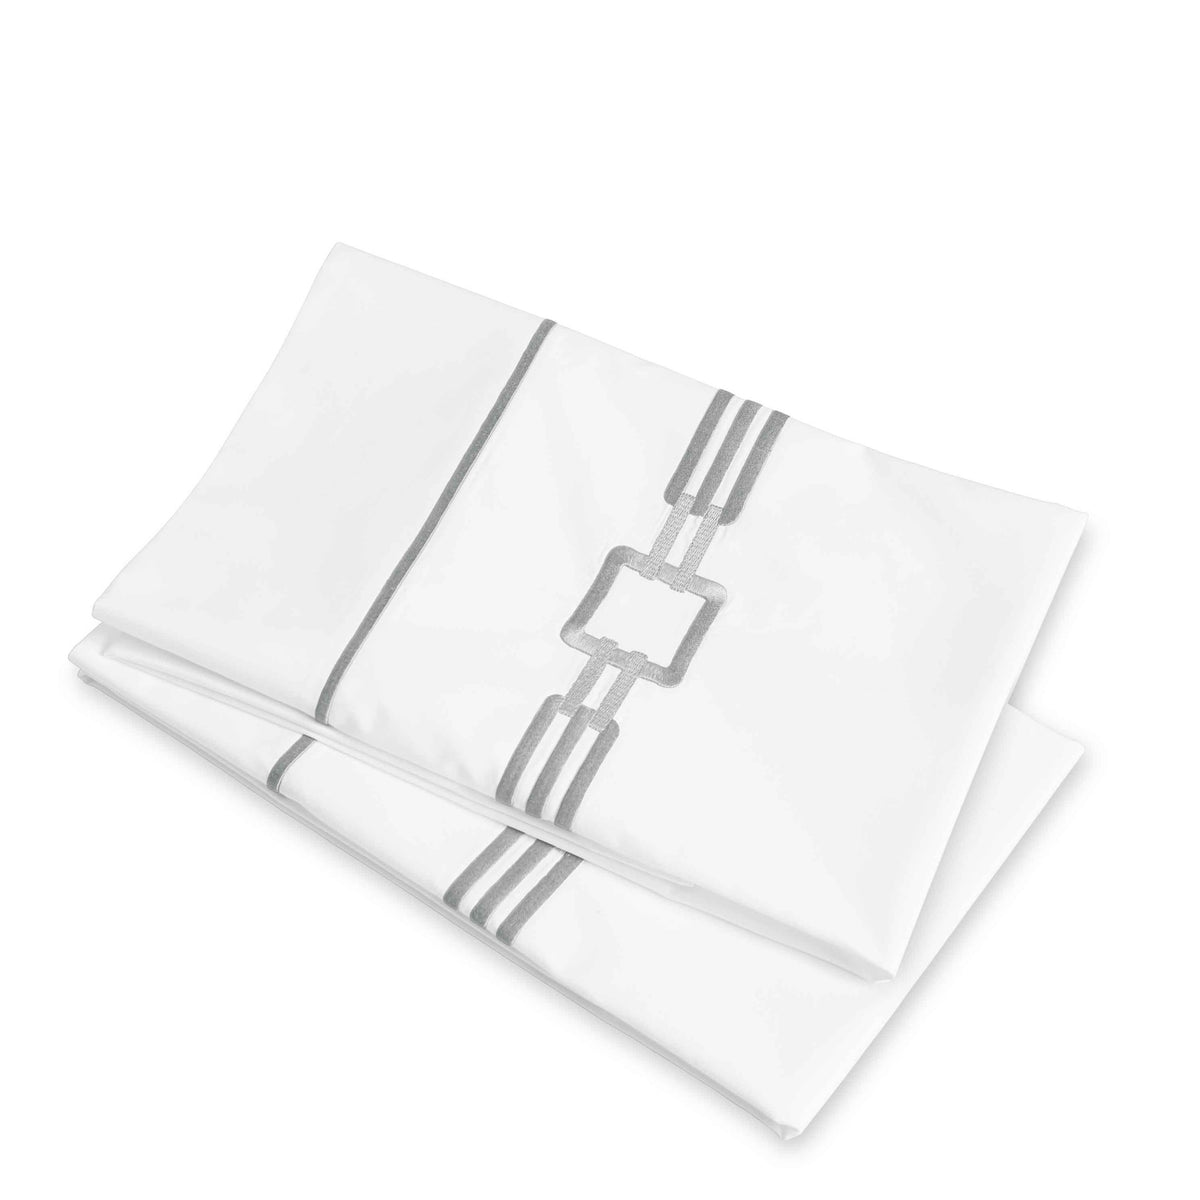 Clear Image of Signoria Retrò Pillowcases in White/Lead Grey Color